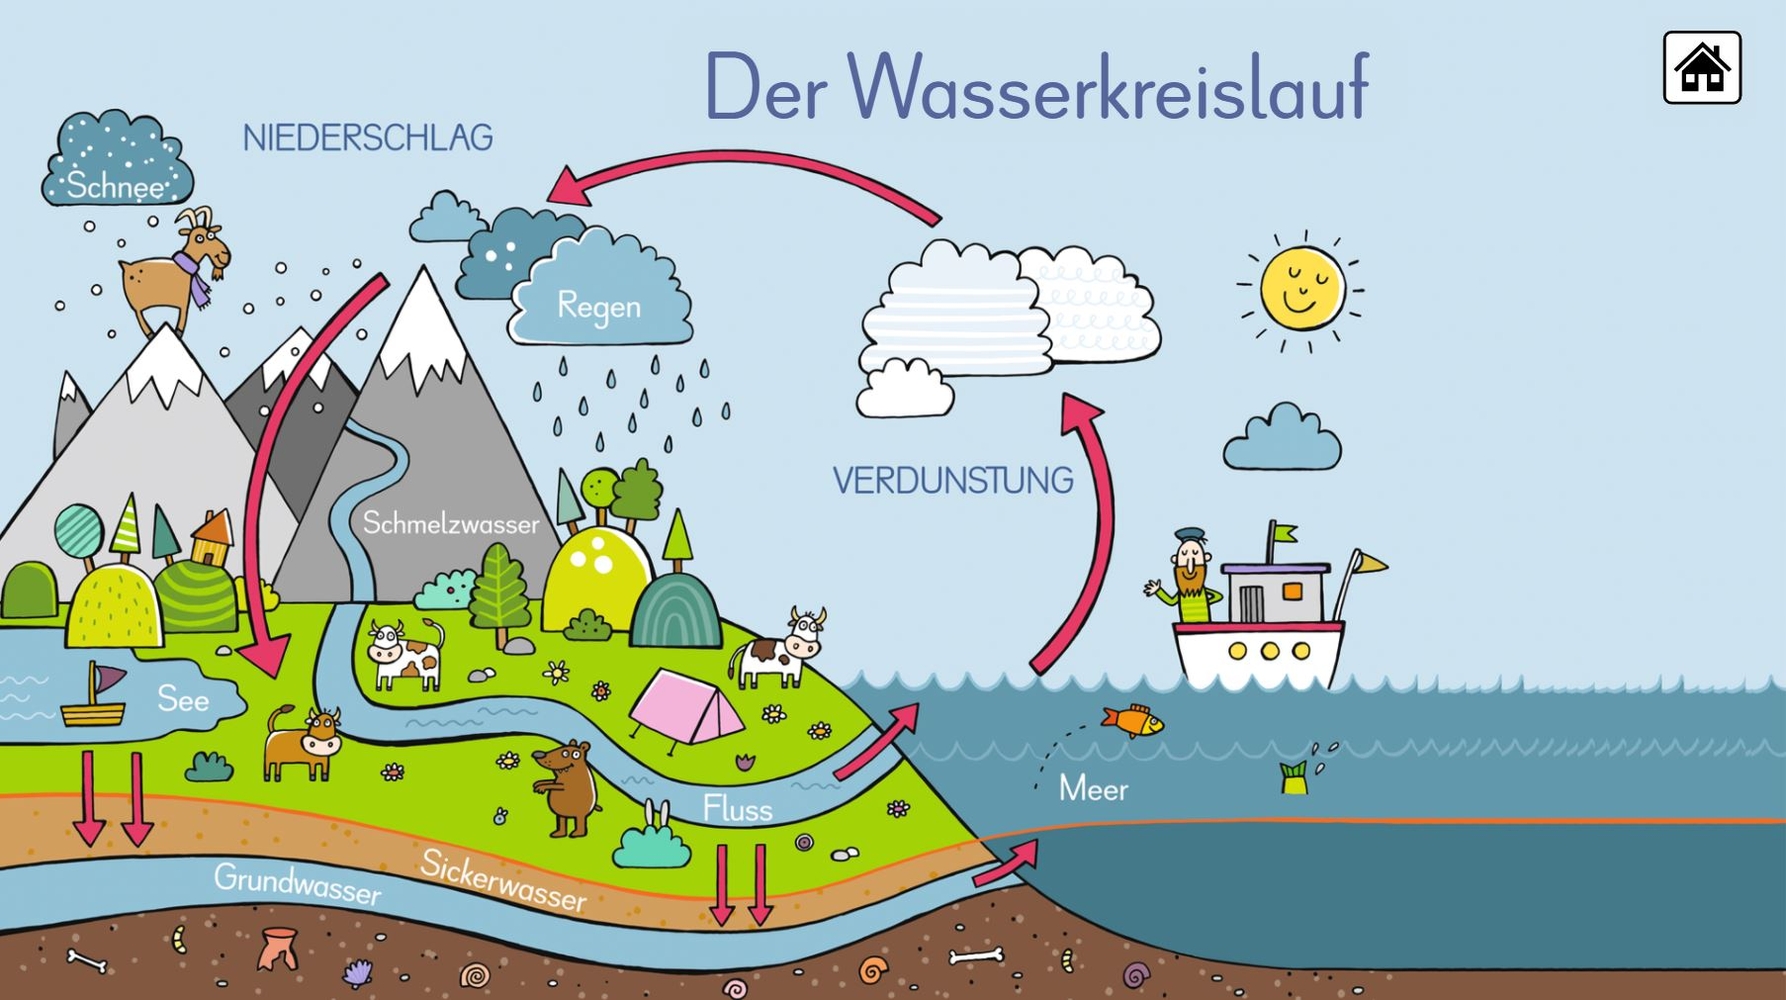 6 digitale Merk-Bilder für den Sachunterricht: Die Ernährungspyramide, Europa, Deutschland, Der Wasserkreislauf, Unsere Bäume, Unser Sonnensystem - Pro-Lizenz - Mac